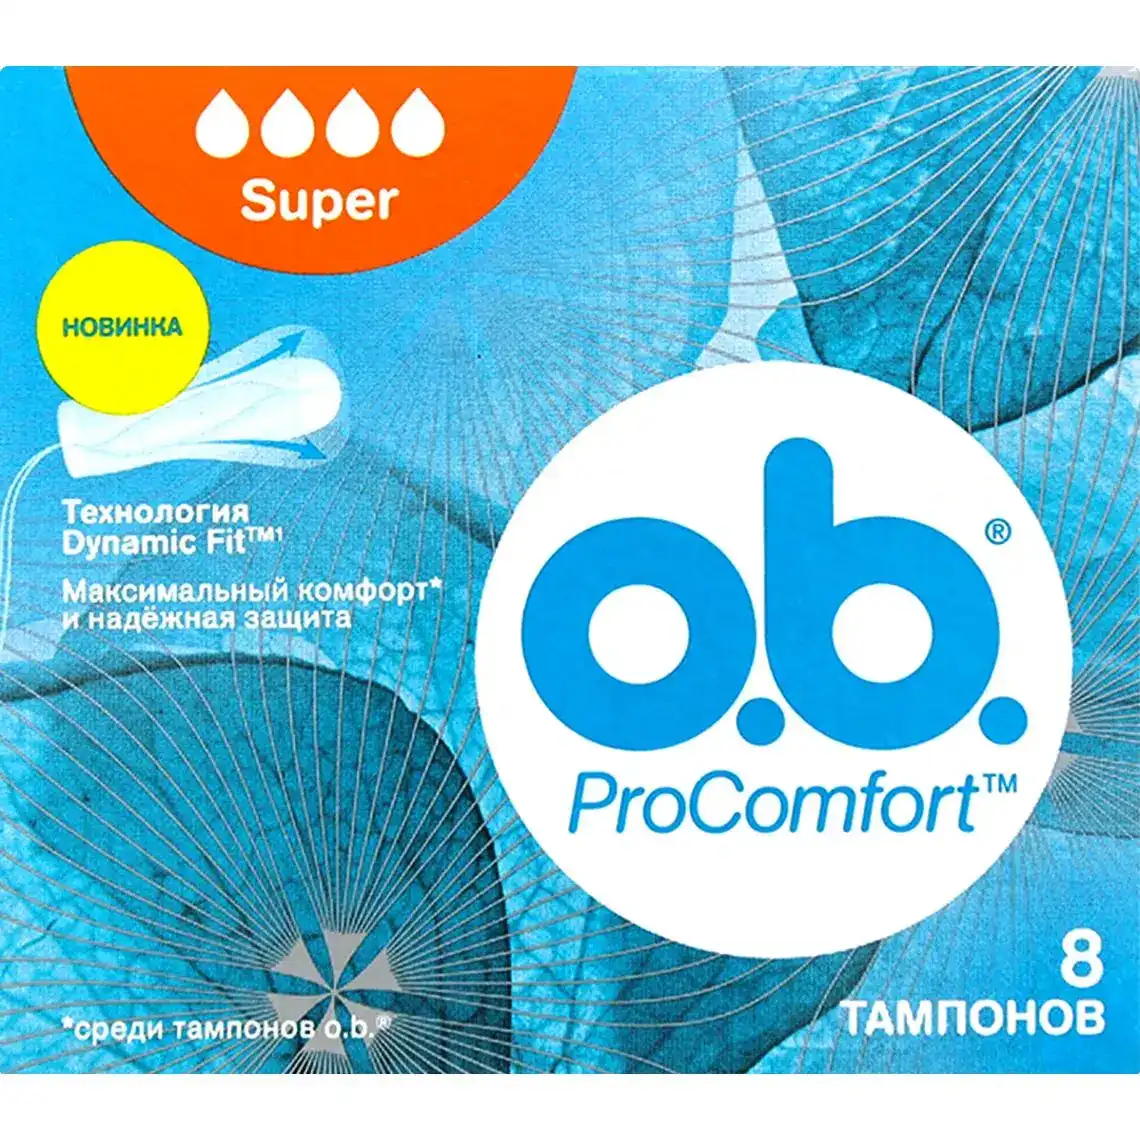 Тампони O.b. Pro Comfort Super 8 шт.